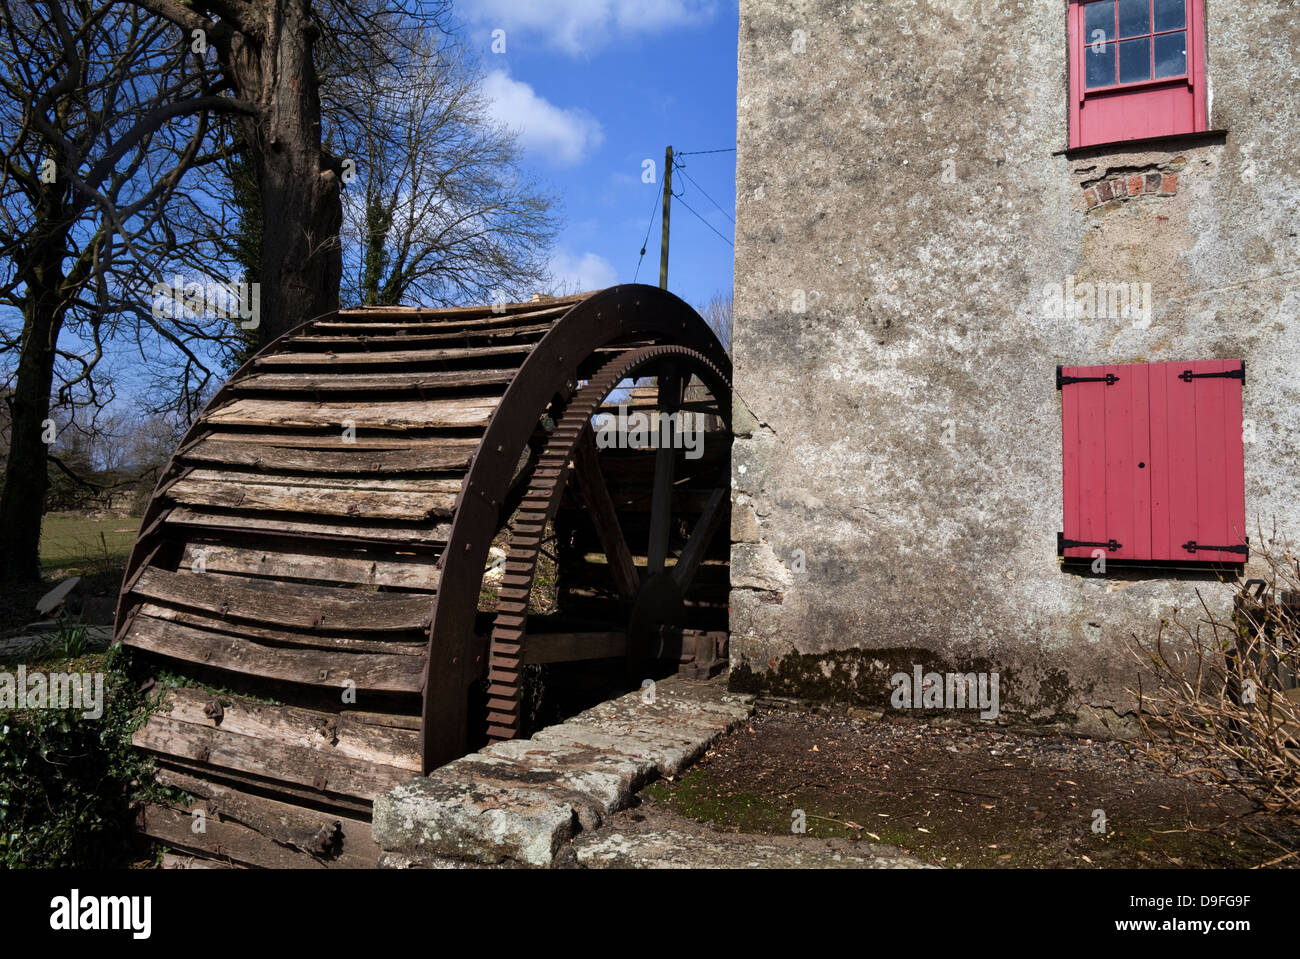 Le Murphy's ancienne roue à eau et moulin à farine sur la rivière, vers 1851 Corock, Boulaide, comté de Wexford, Irlande Banque D'Images